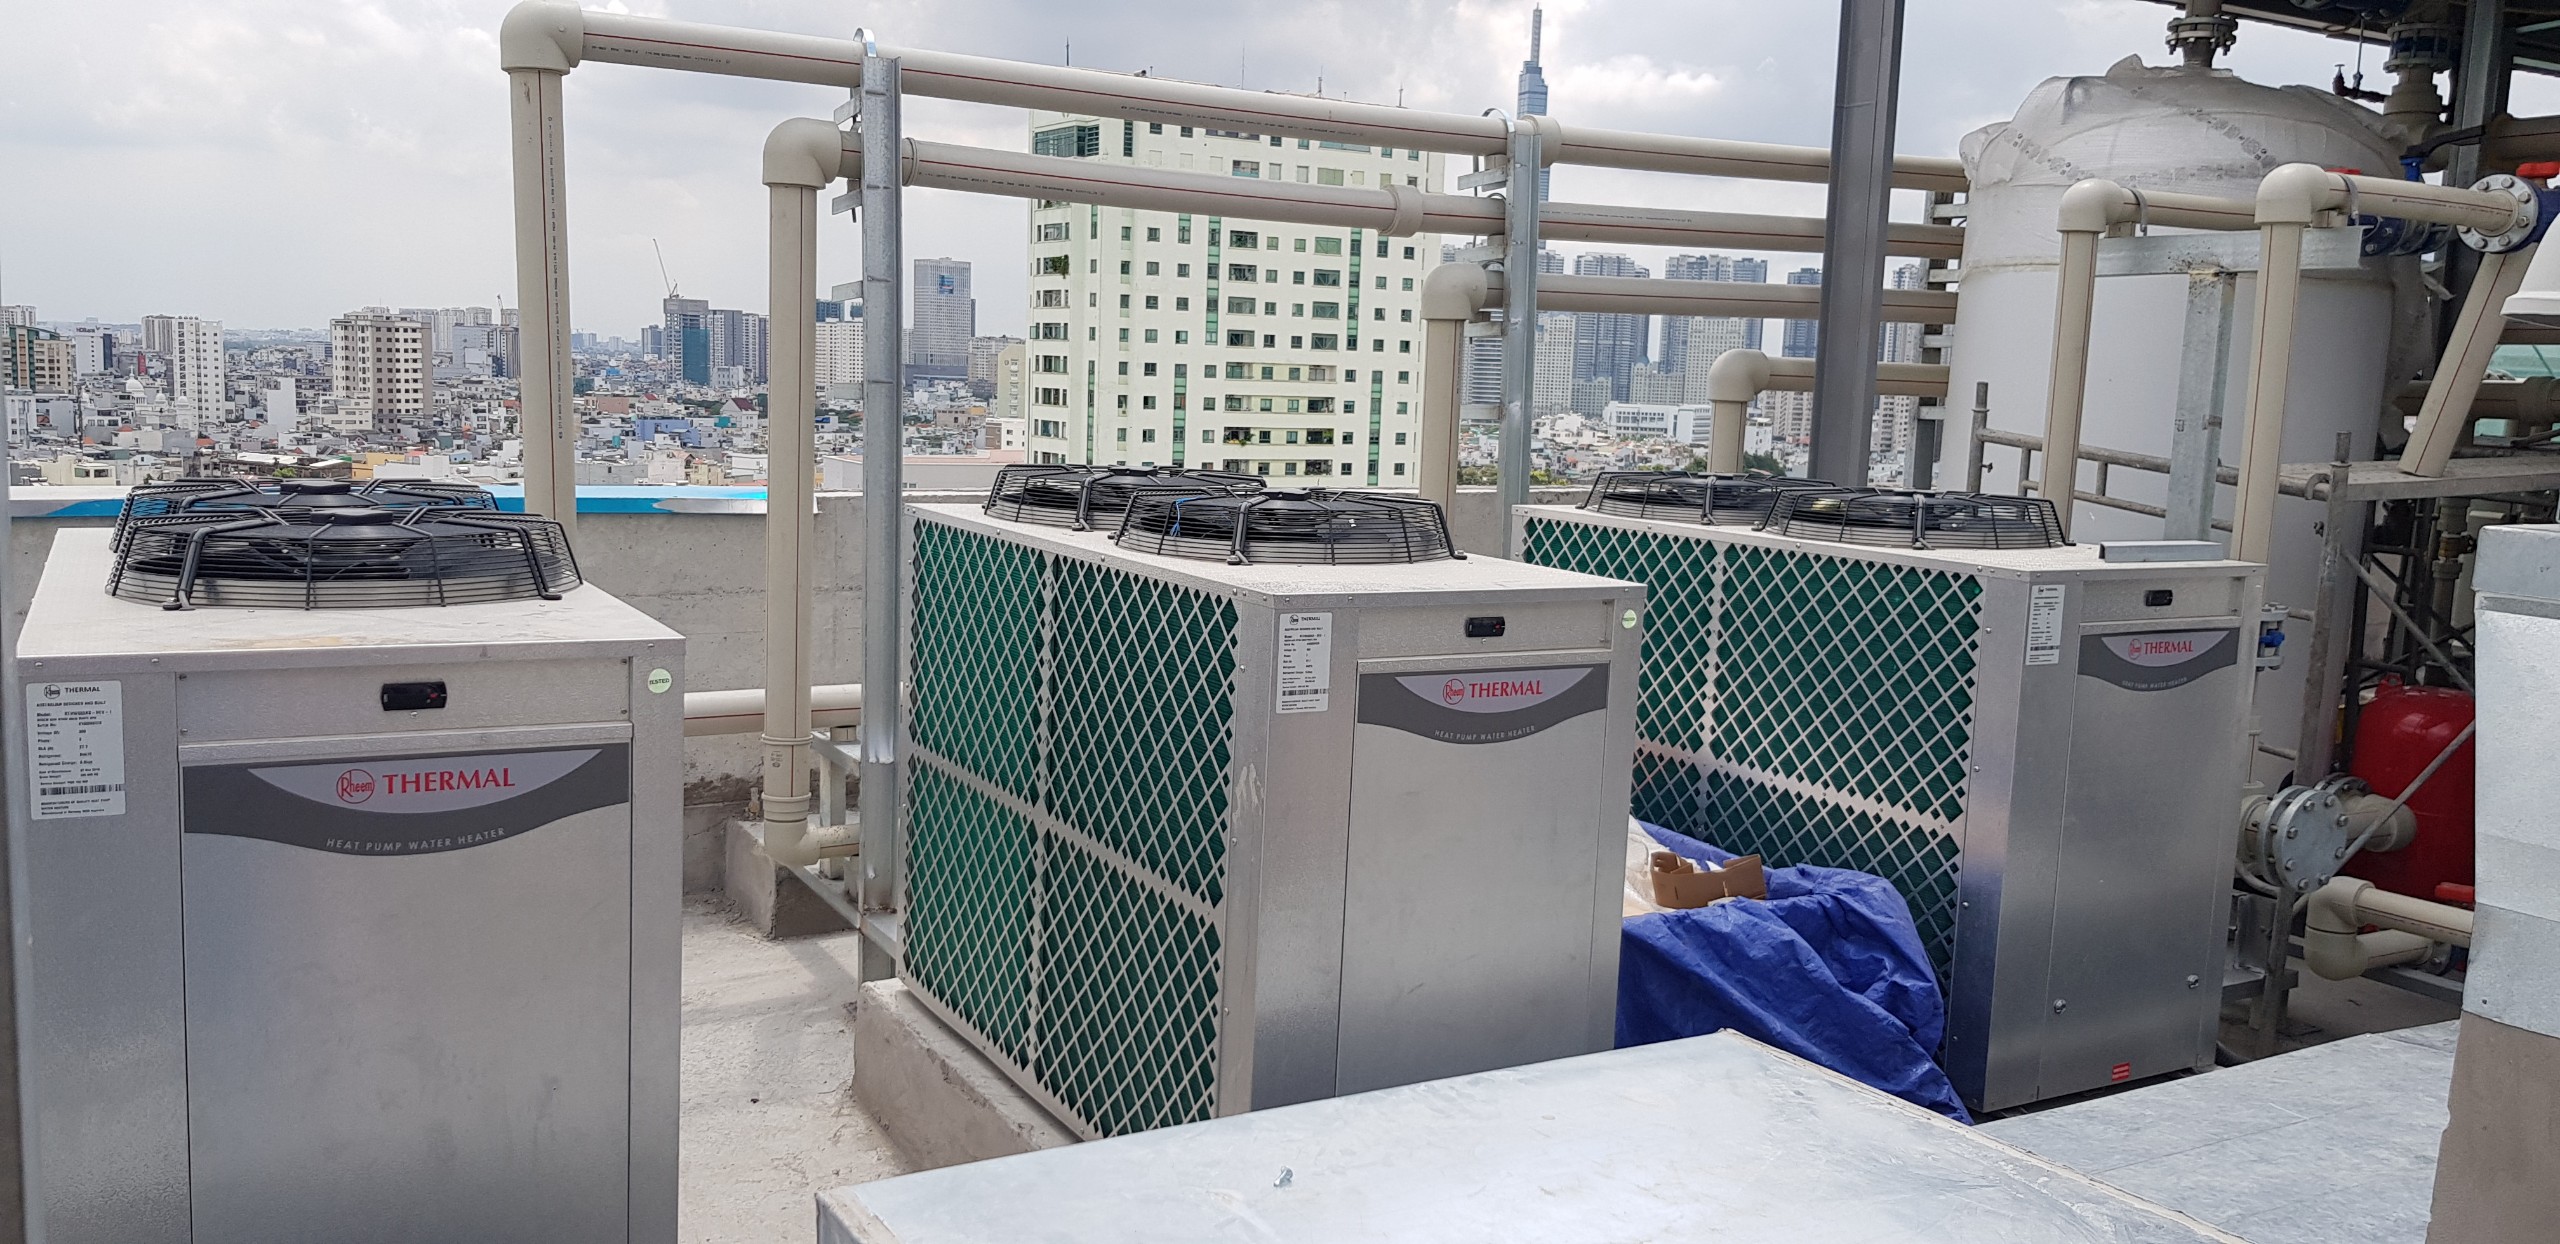 Hệ thống máy nước nóng trung tâm Heat Pump cho bệnh viện